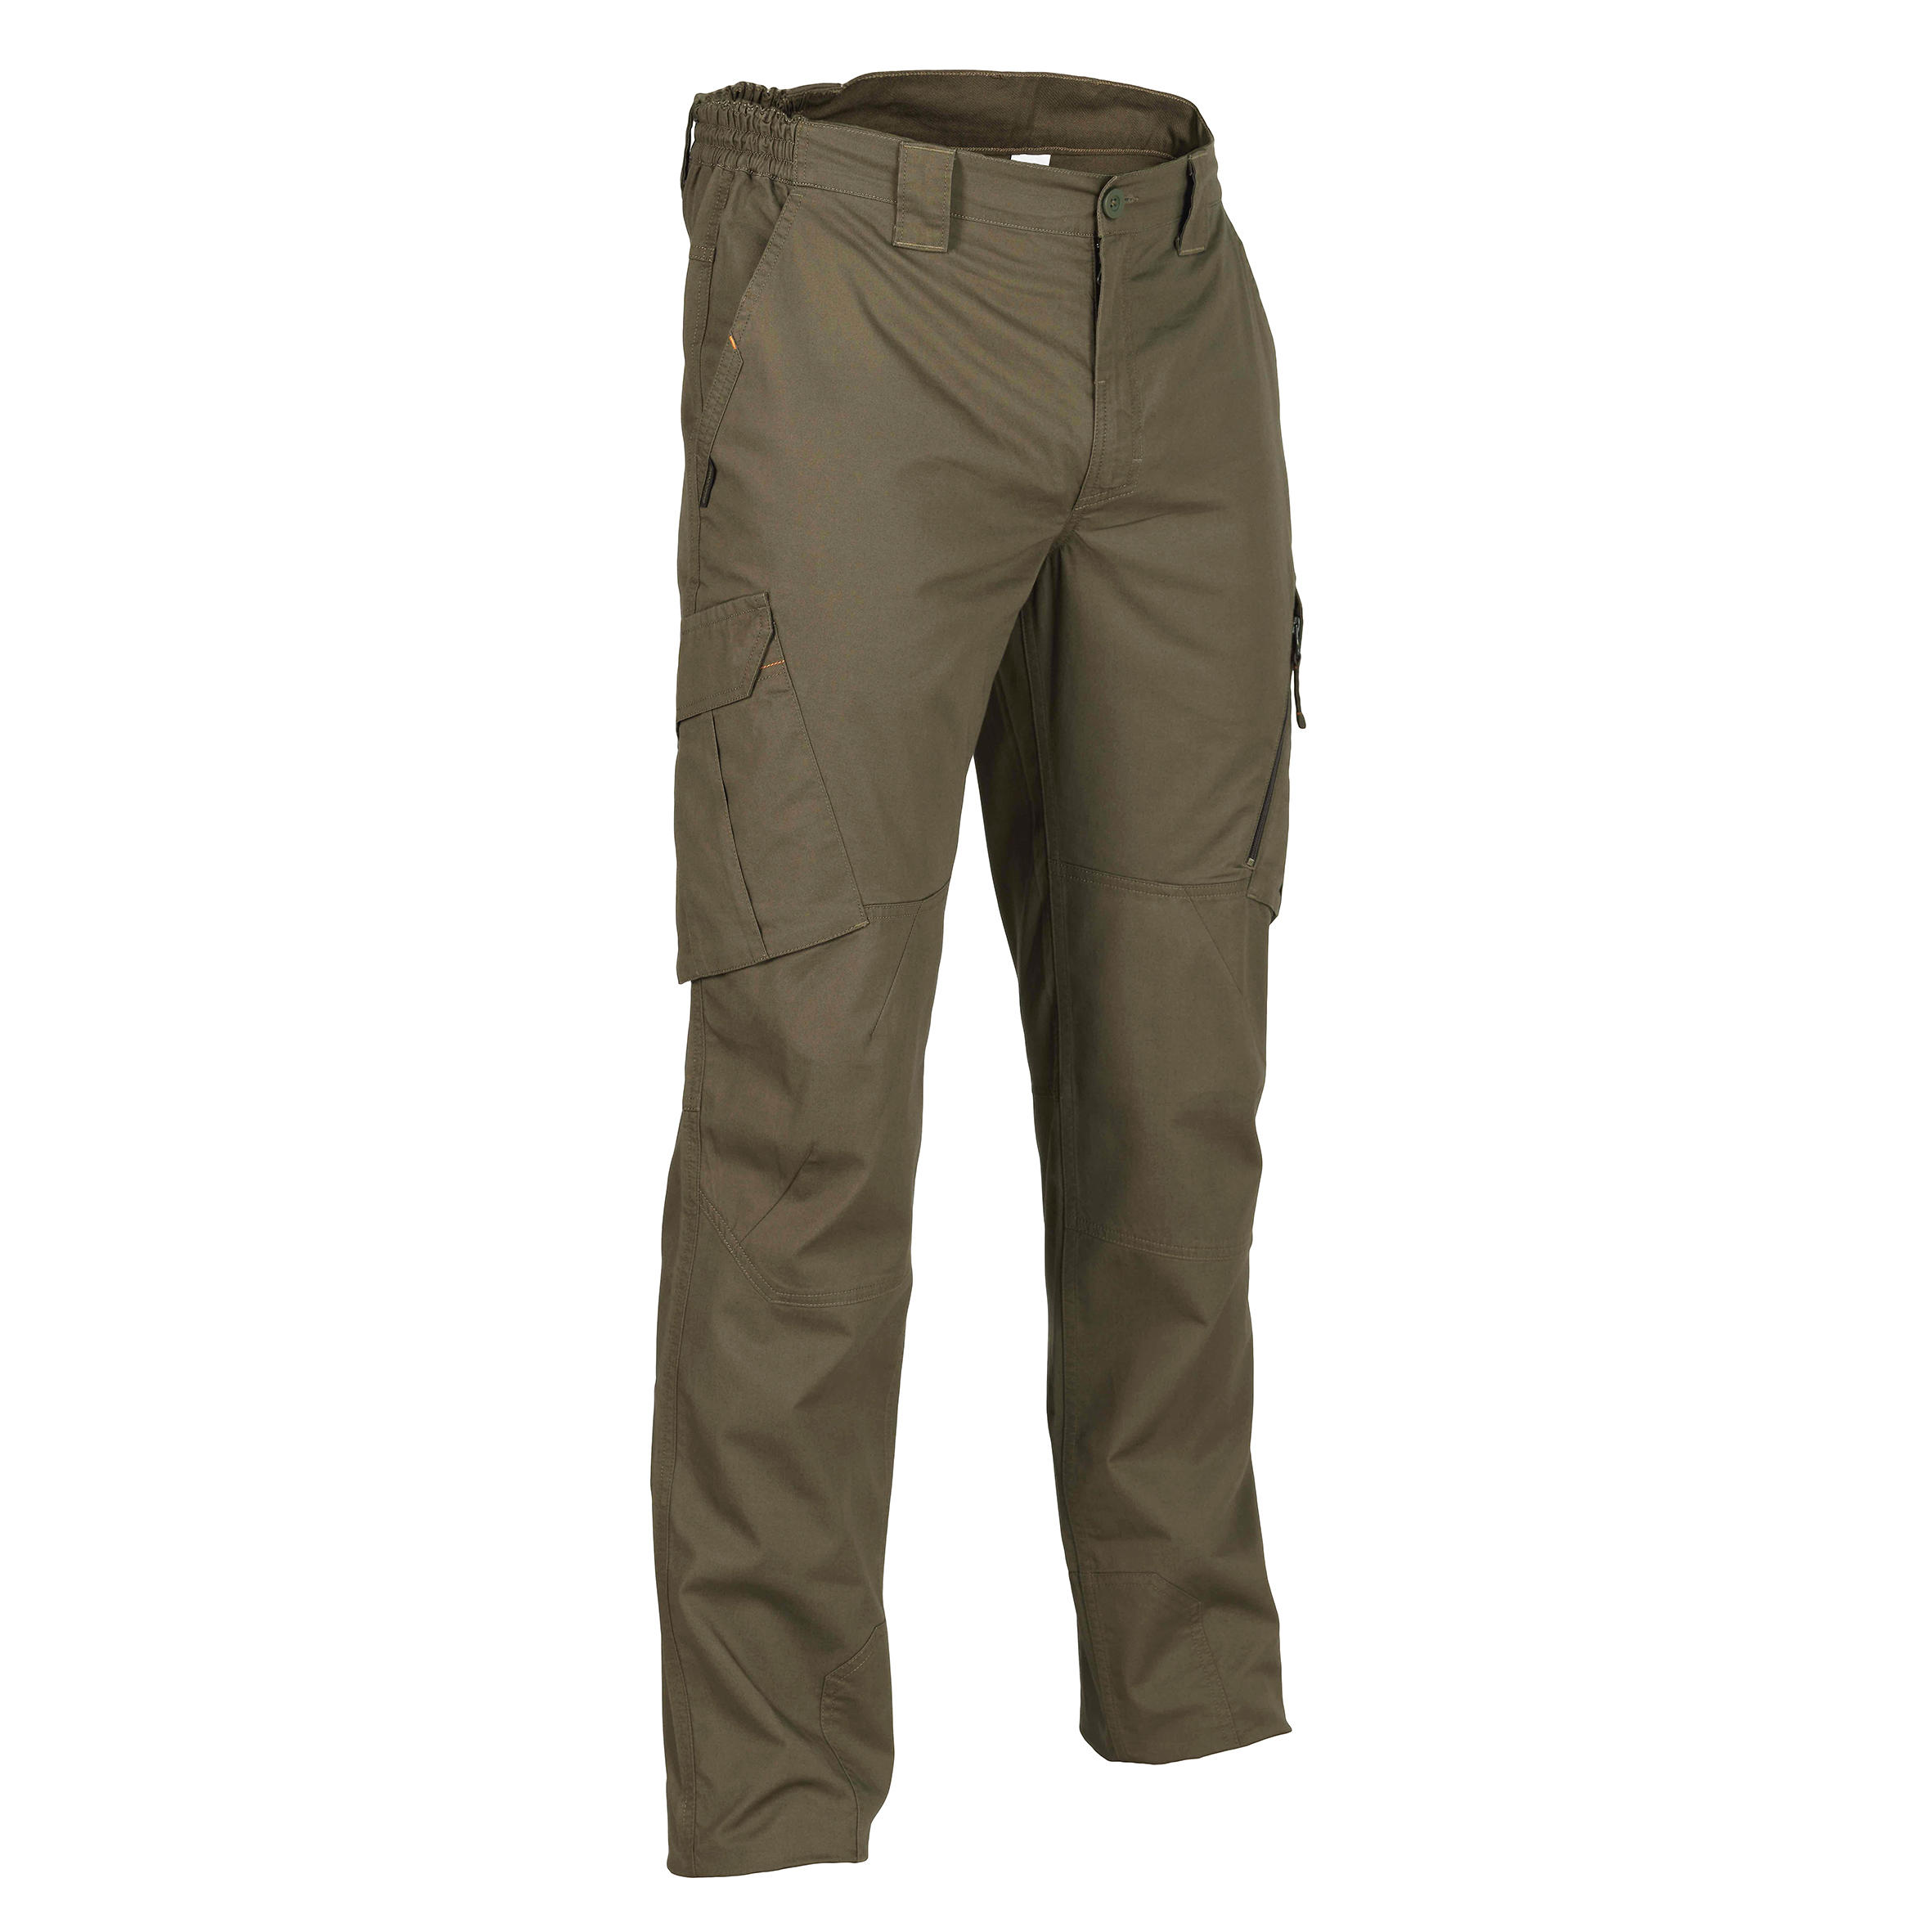 Buy Highlander Olive Green Slim Fit Solid Regular Trousers for Men Online  at Rs568  Ketch